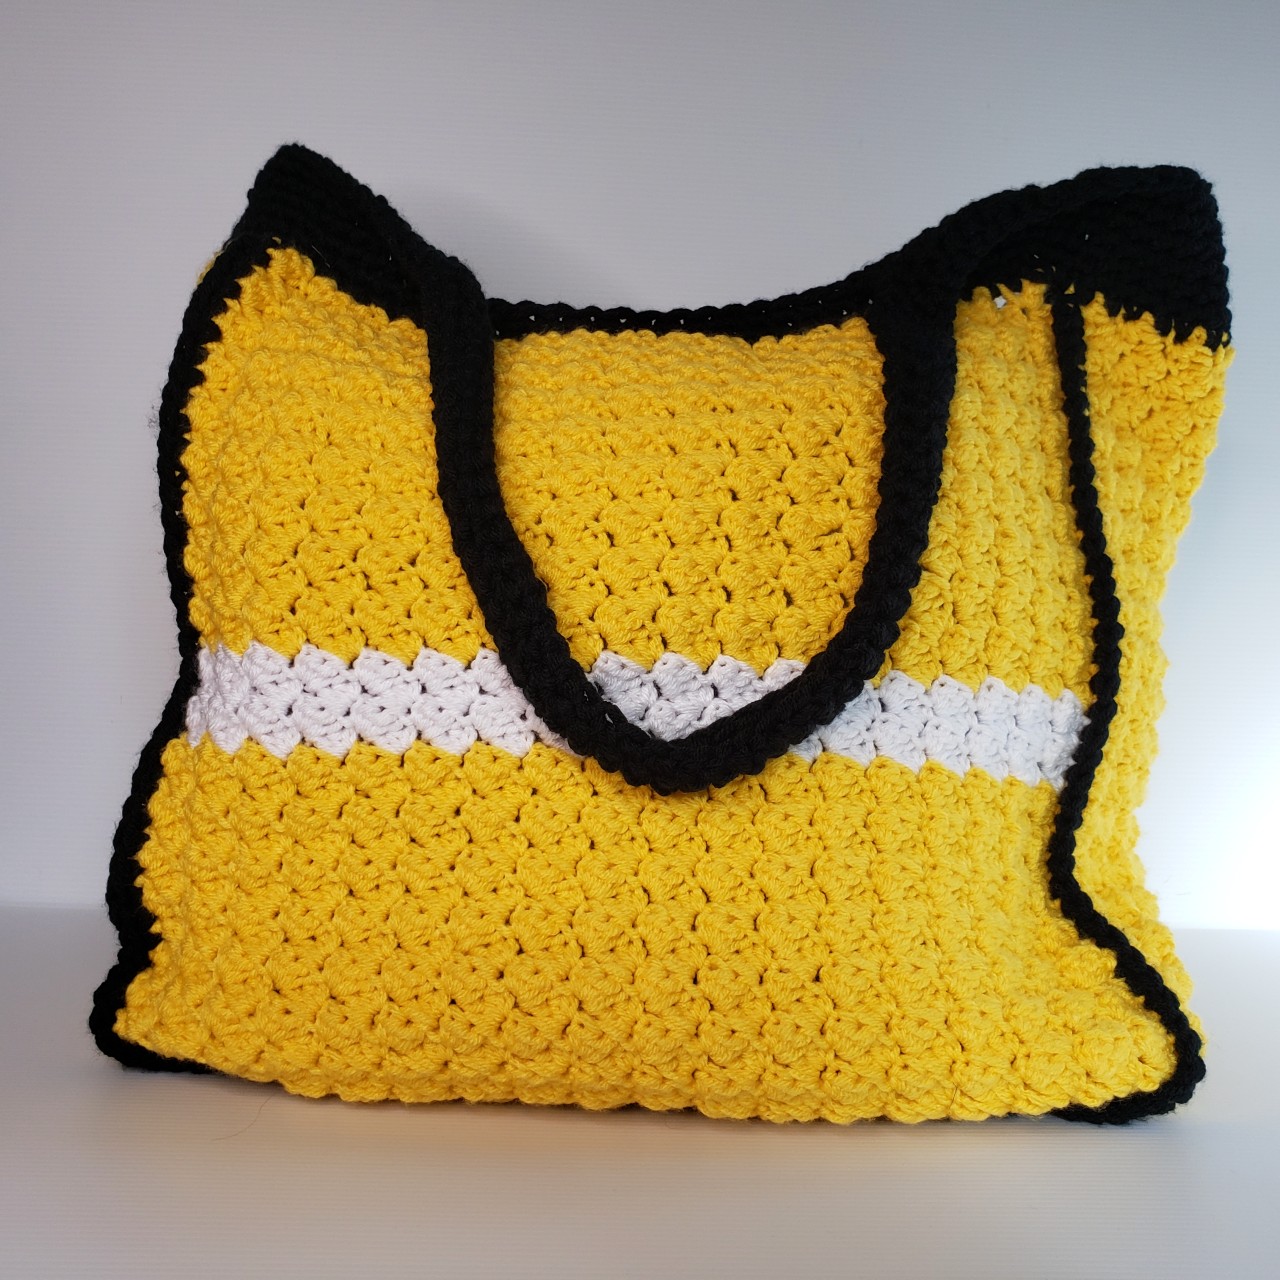 Sedge Stitch Crochet Shawl: Cozy and Stylish - Affinity For Yarn